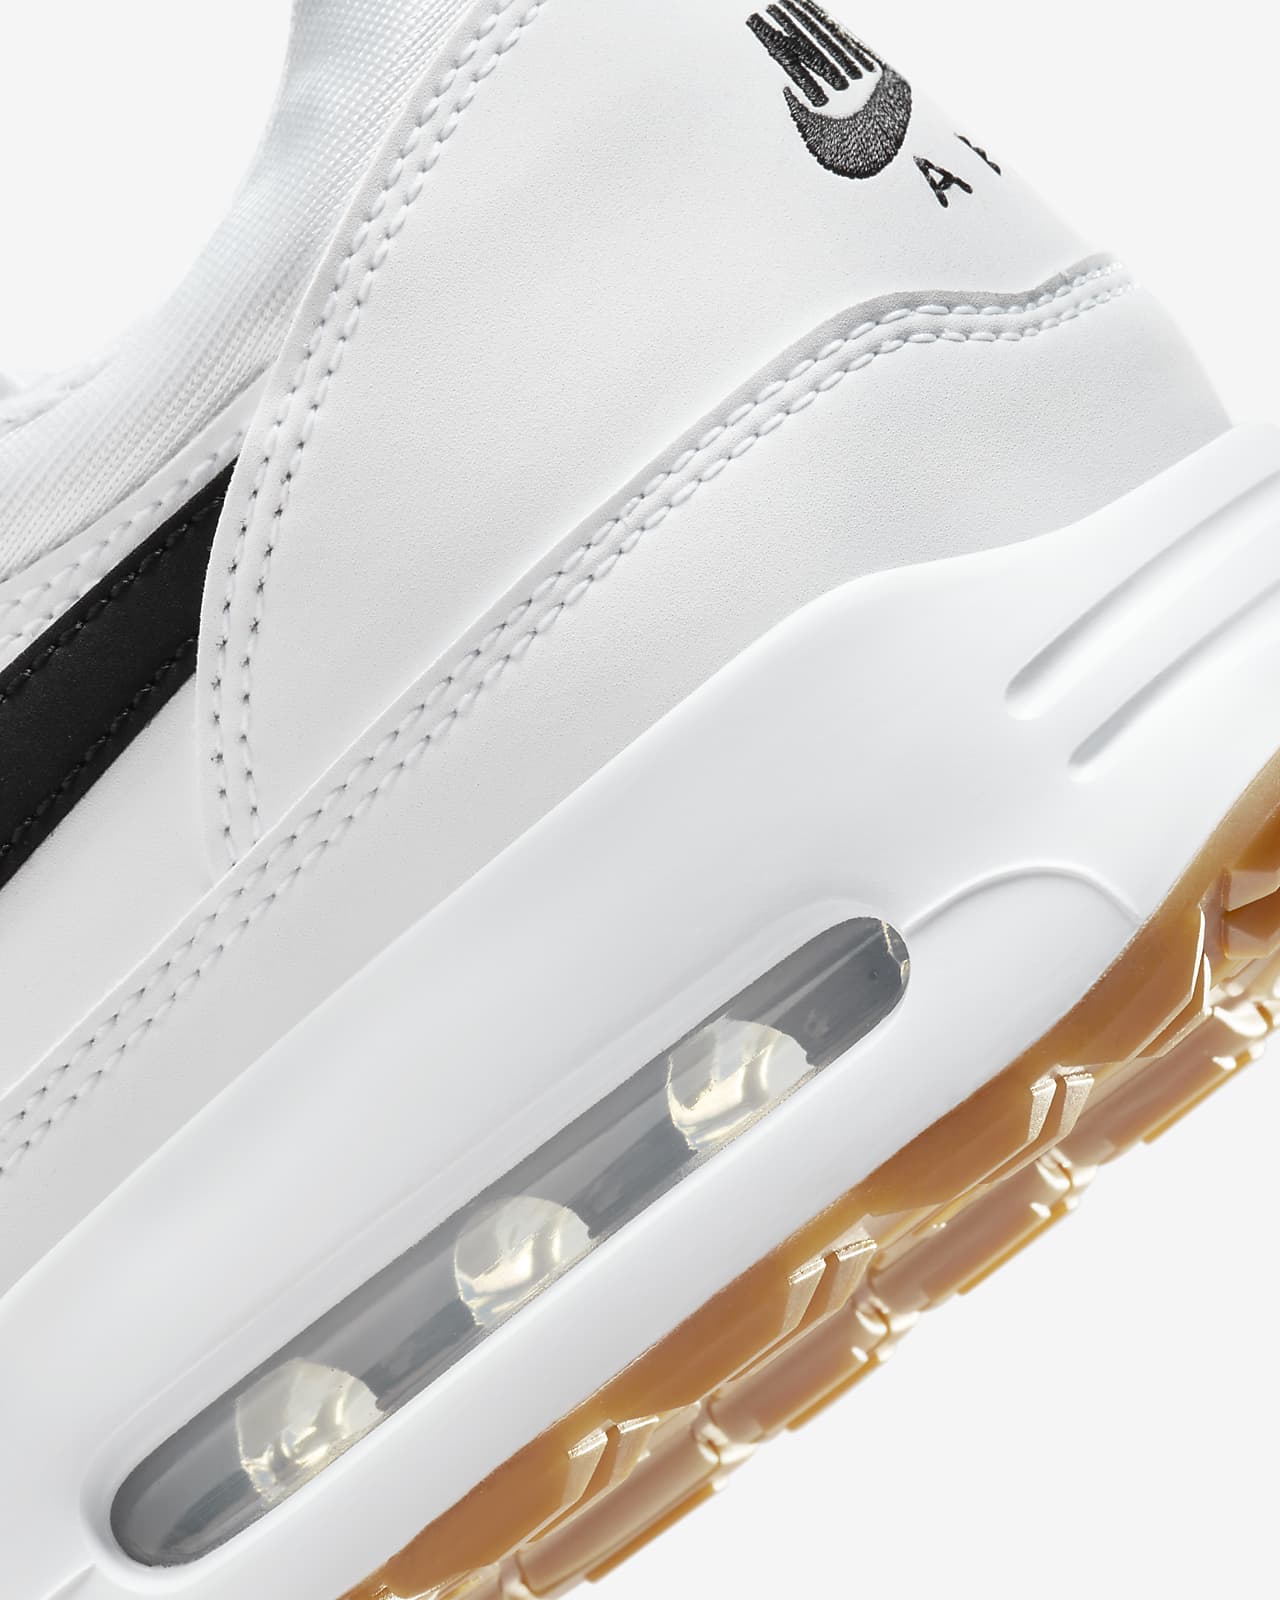 Nike Vapor Pro 2 Black/White Men's Shoes | Tennis Warehouse